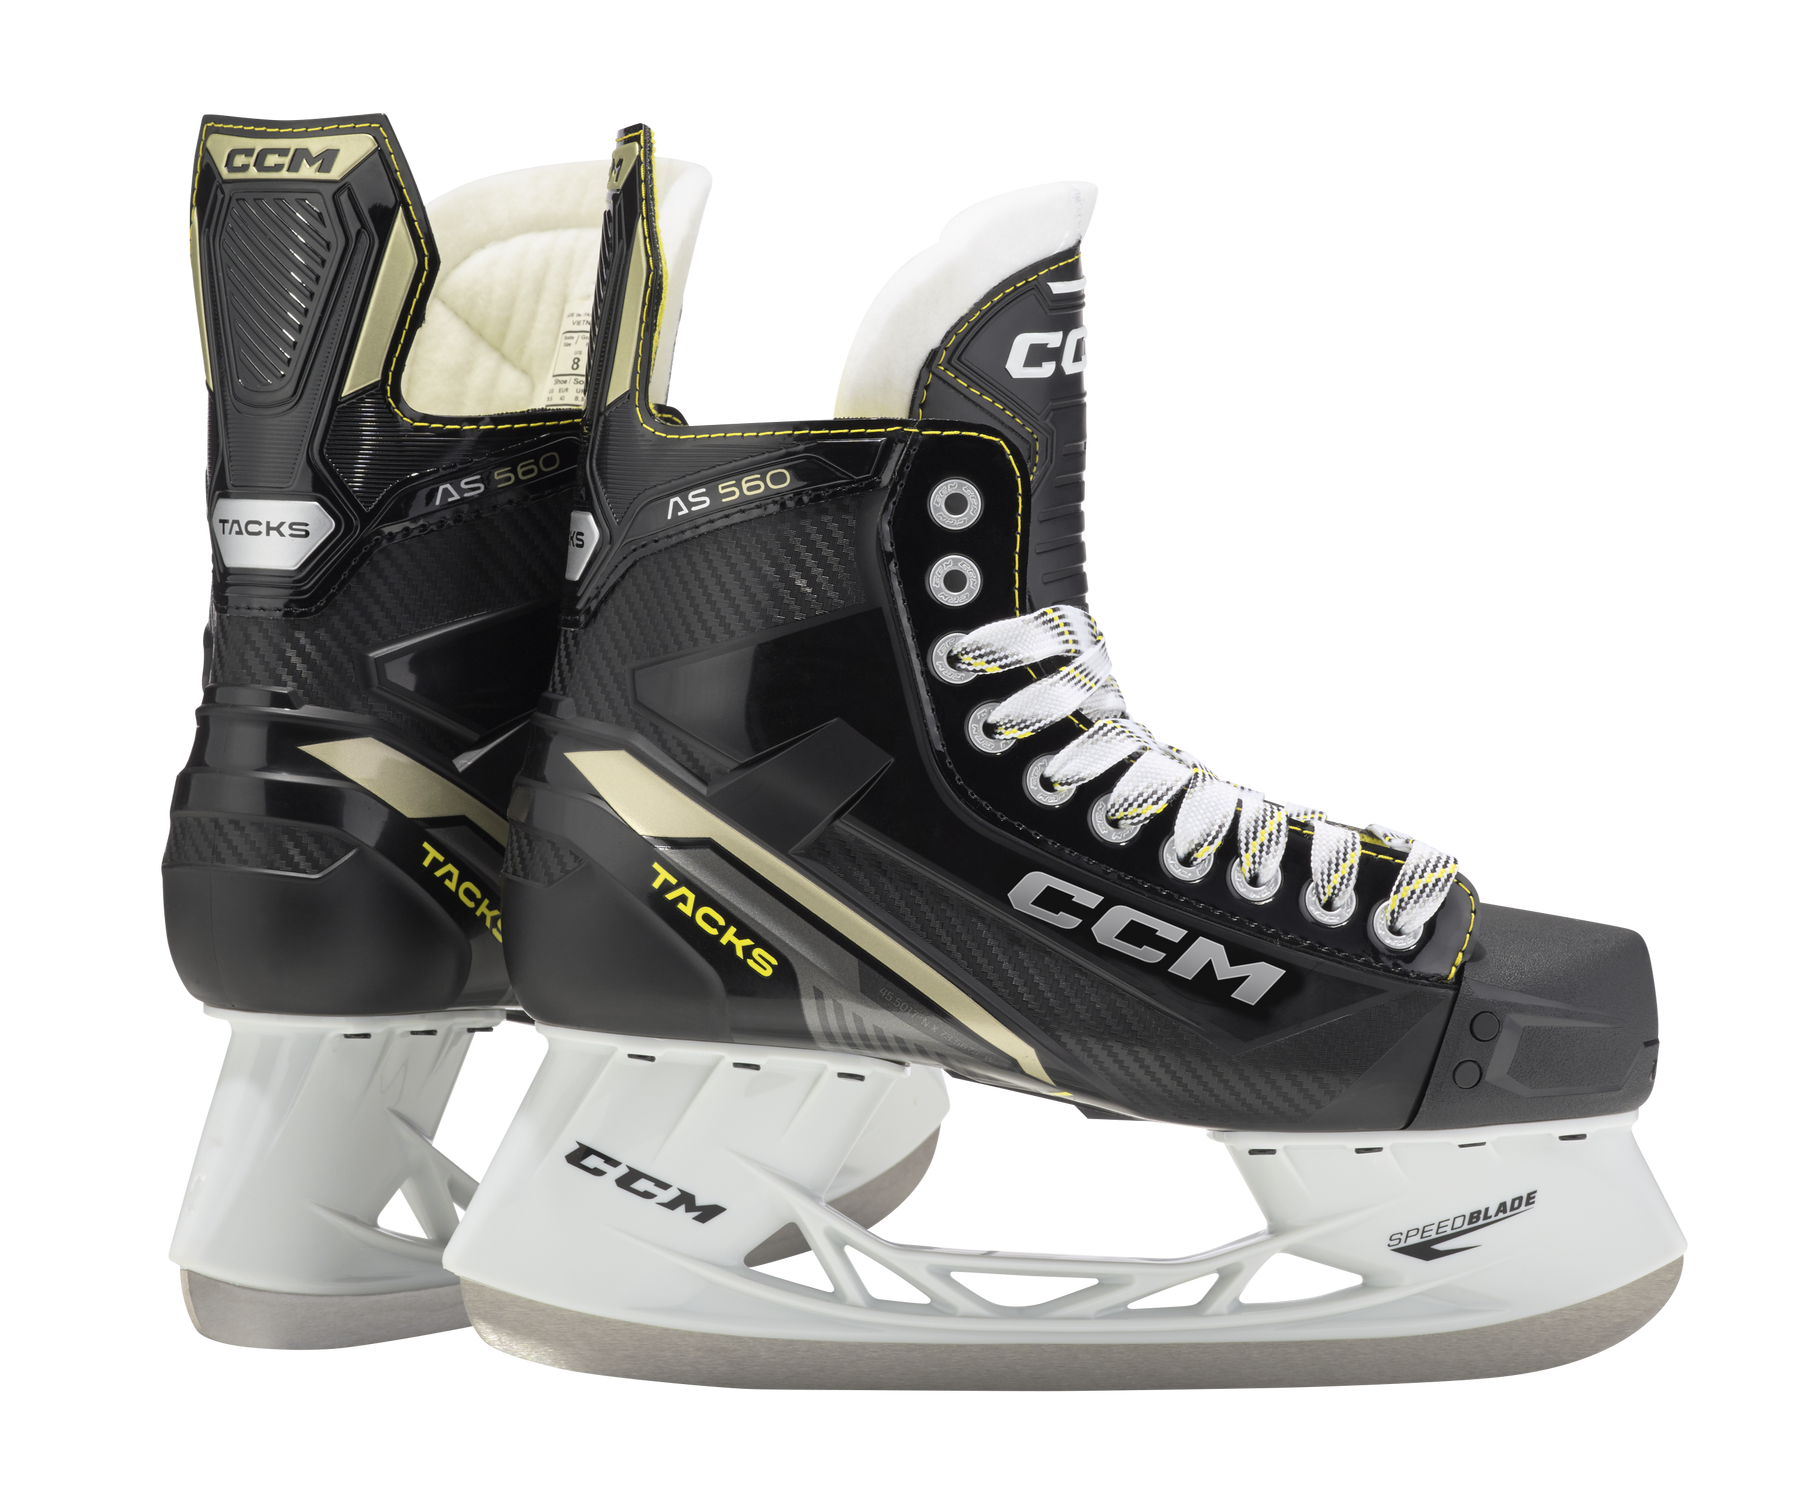 CCM Tacks AS-560 Intermediate Hockey Skates